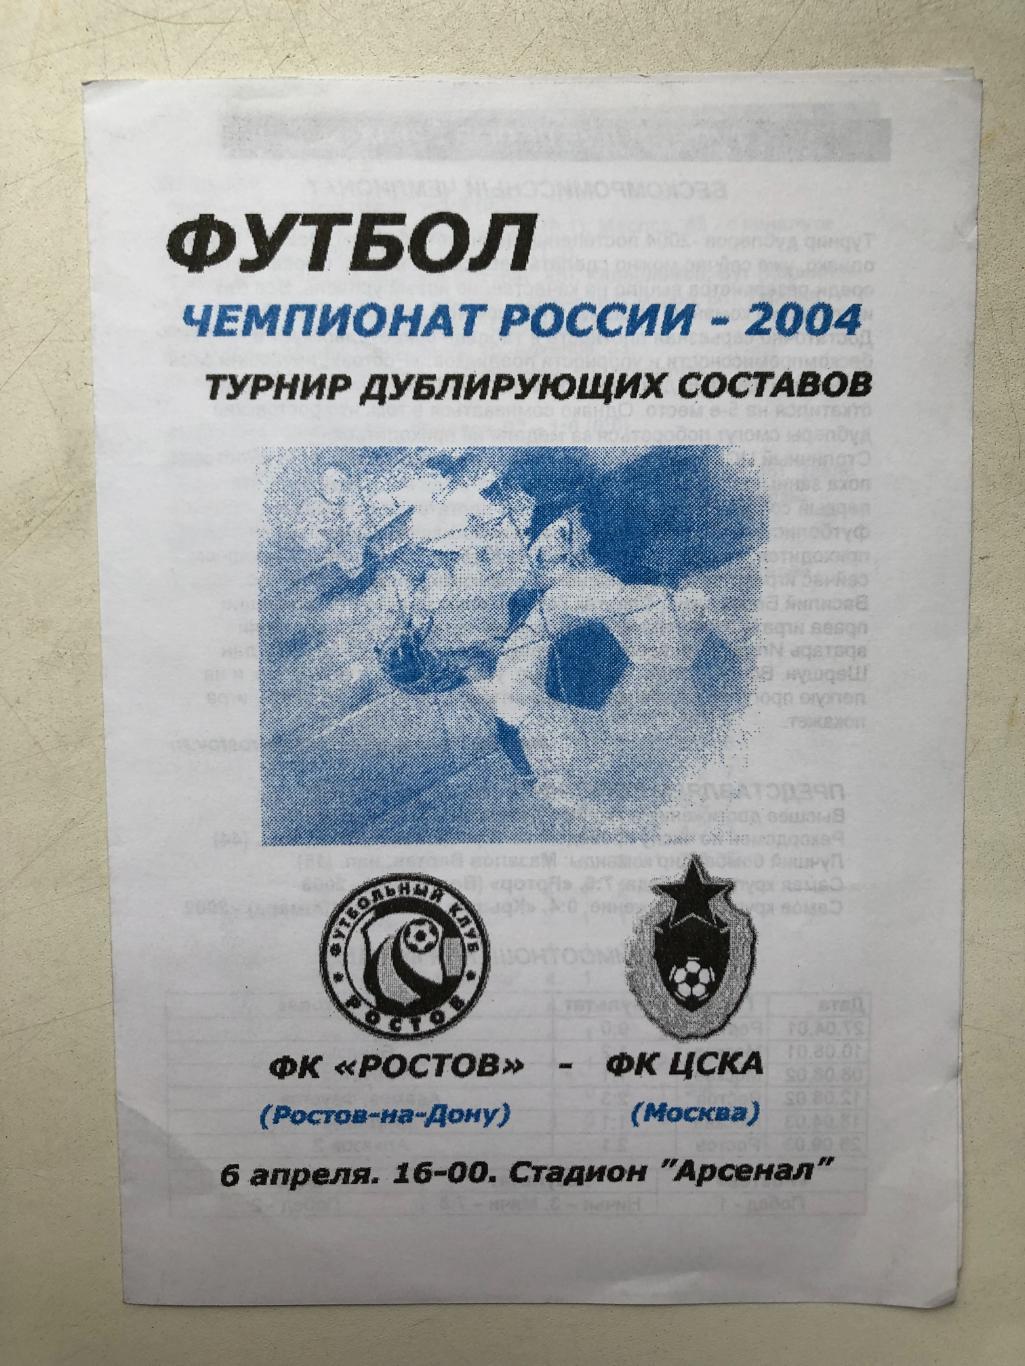 Ростов - ЦСКА 6.04.2004 дублирующие составы